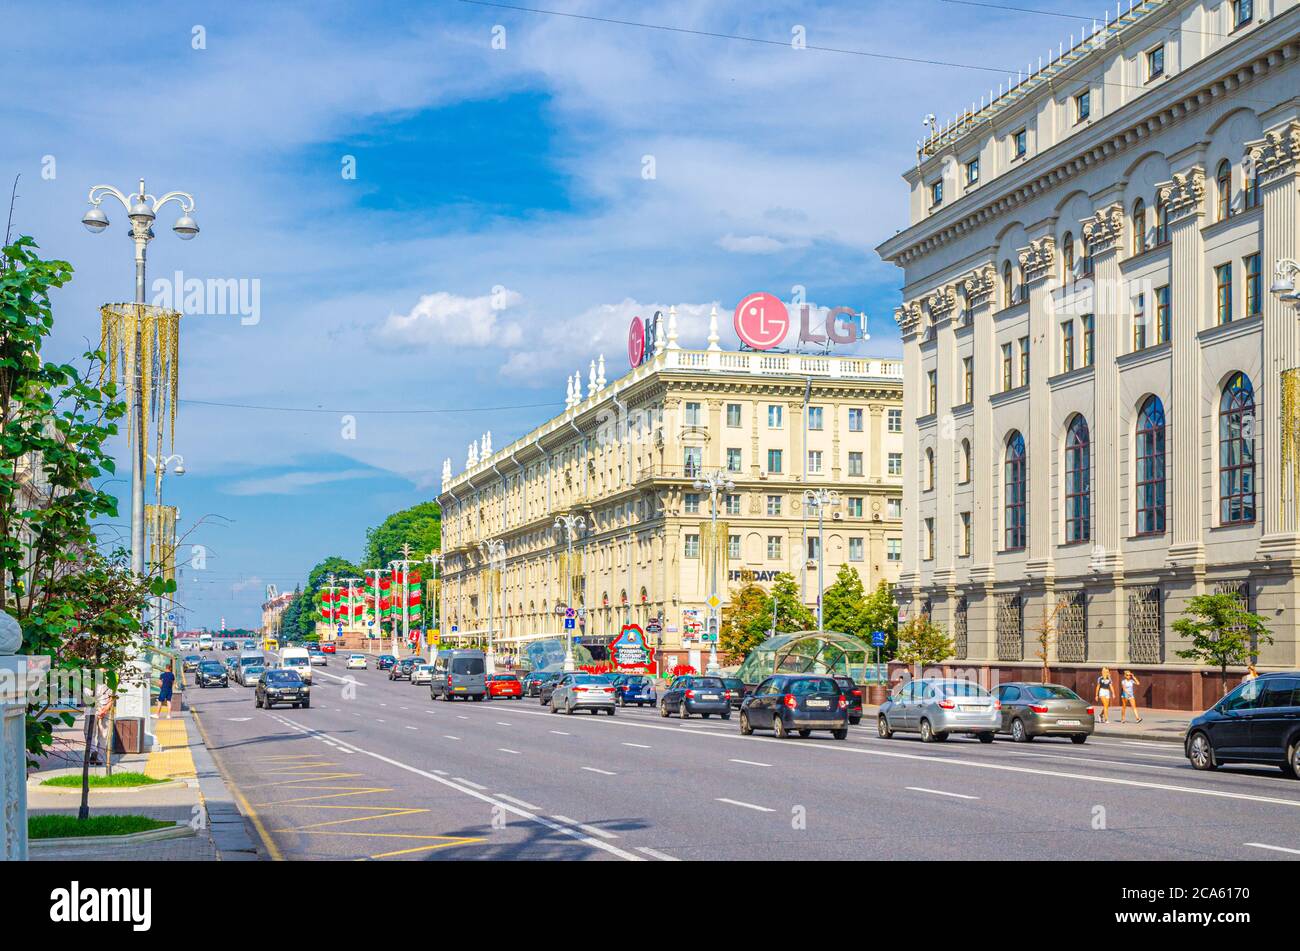 Minsk, Bielorussia, 26 luglio 2020: Independence Avenue con il classicismo socialista edifici in stile Stalin Empire, marciapiede e auto a cavallo e autobus, cielo blu nuvole bianche in estate soleggiato giorno Foto Stock